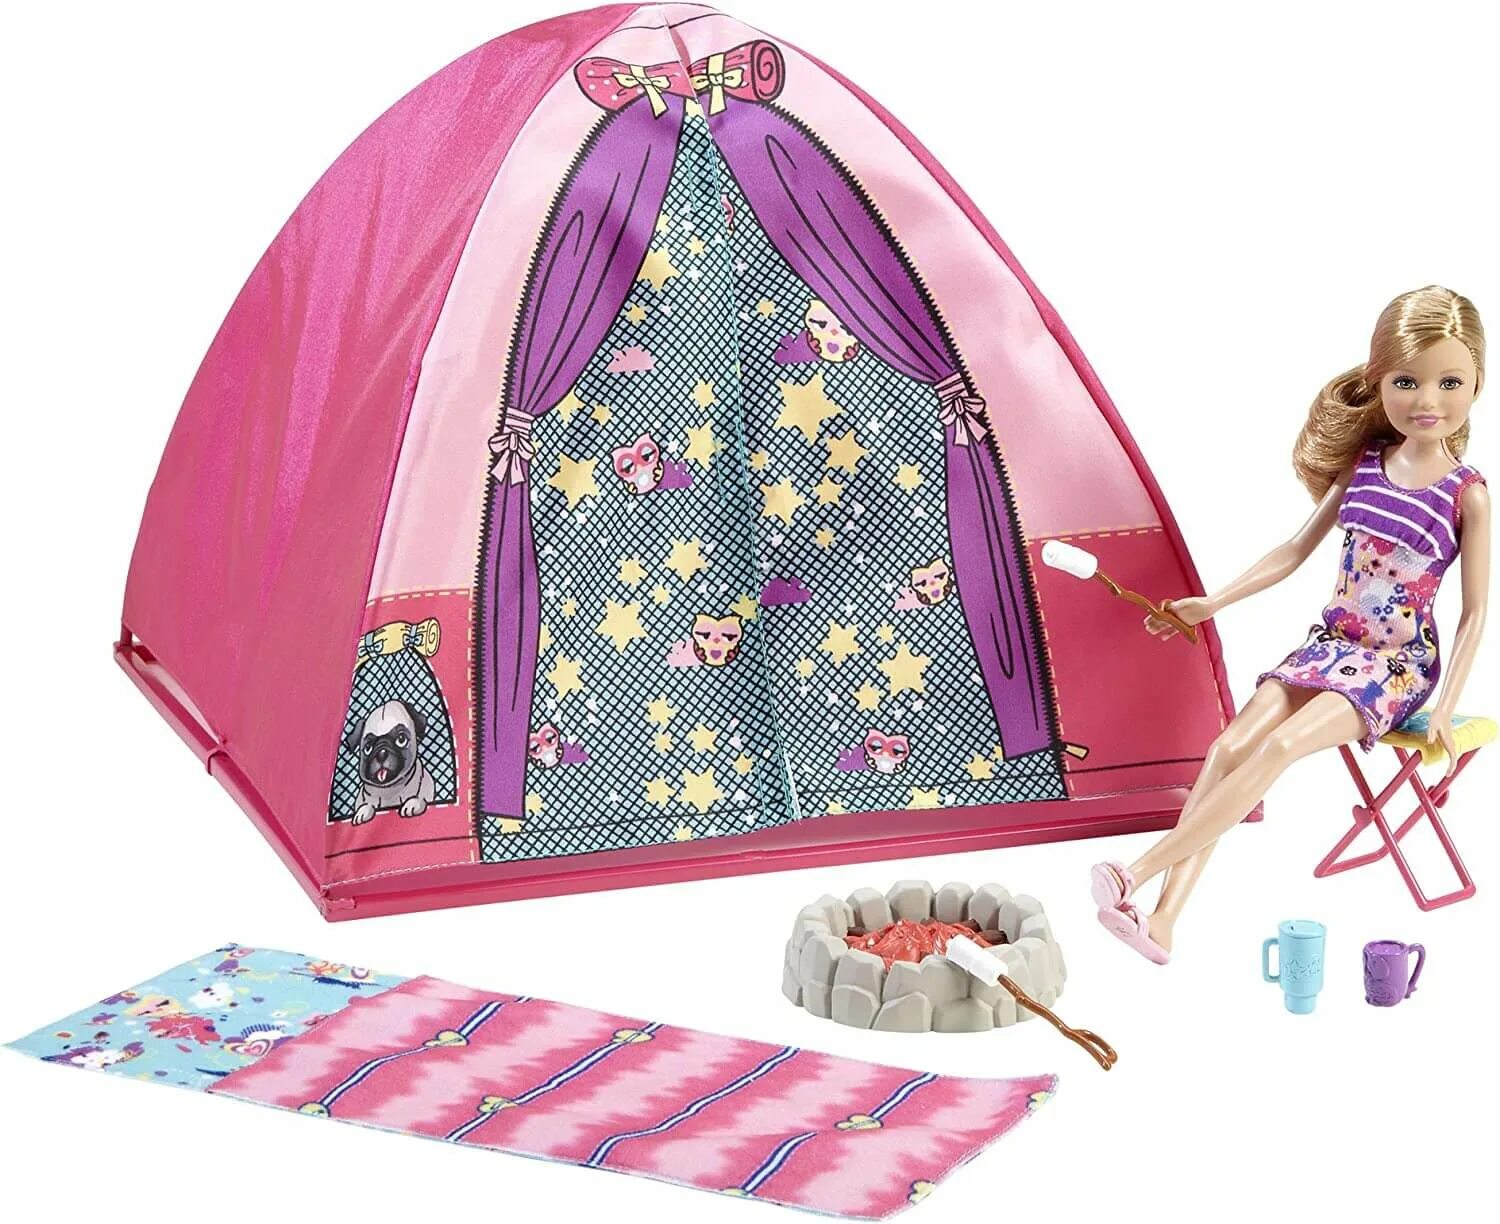 Сестры дол. Скиппер кэмпинг Барби. Куклы Стейси кемпинг. Палатка Barbie Camping Playset. Кукла Барби с палаткой Скипер.